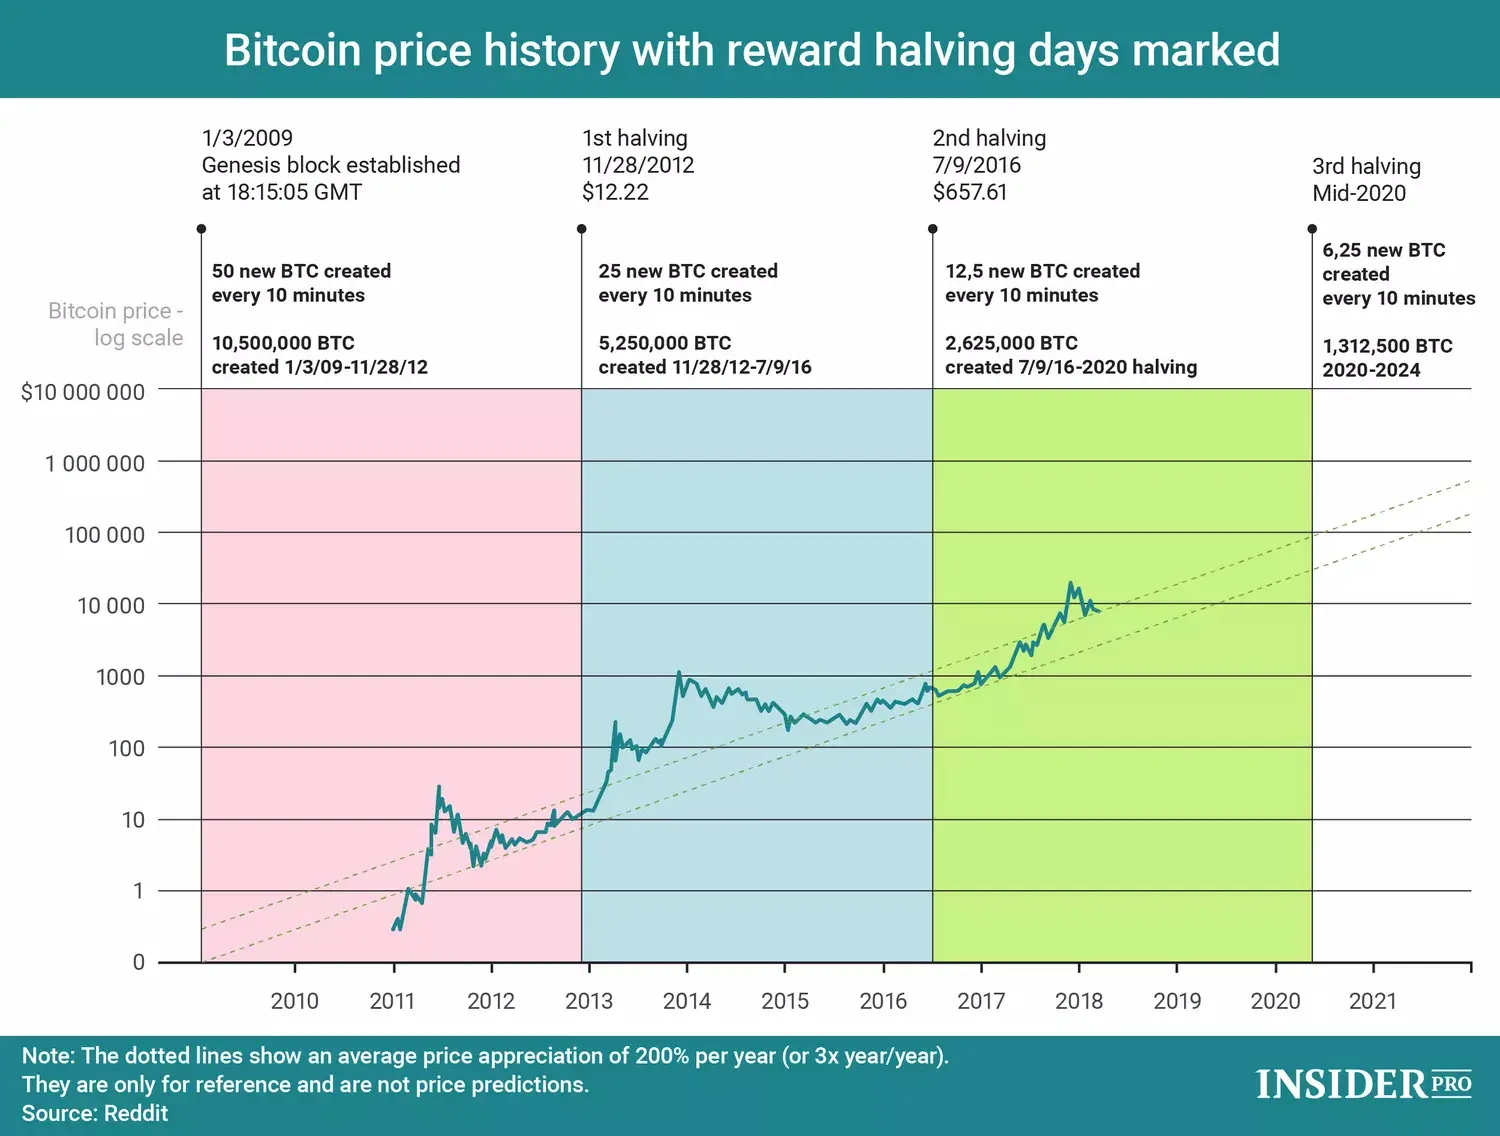 Alta do Bitcoin após halving em anos anteriores